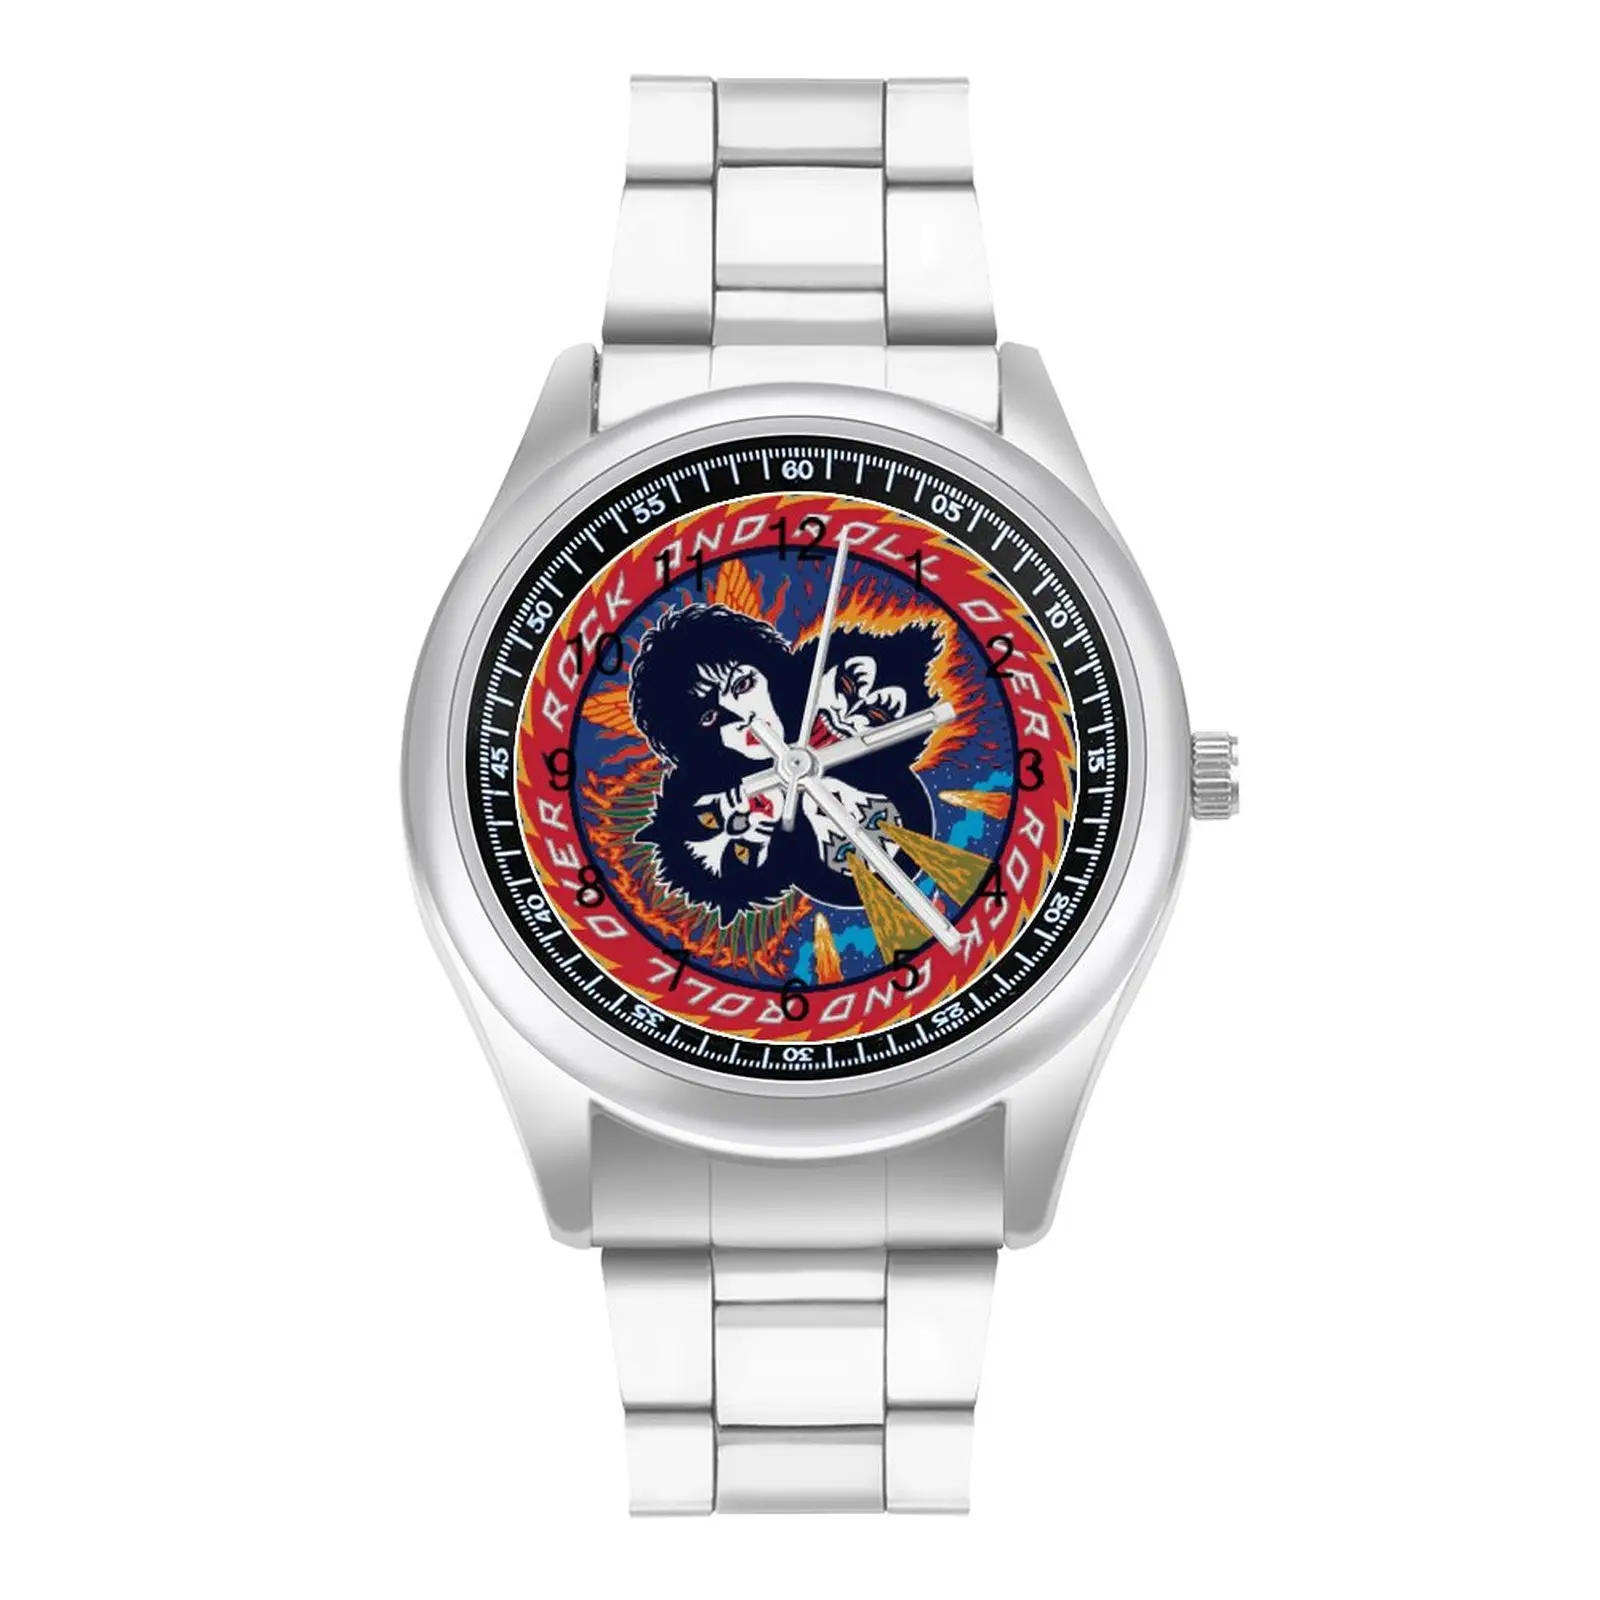 Кварцевые часы Kiss Band дизайнерские оригинальные наручные из нержавеющей стали